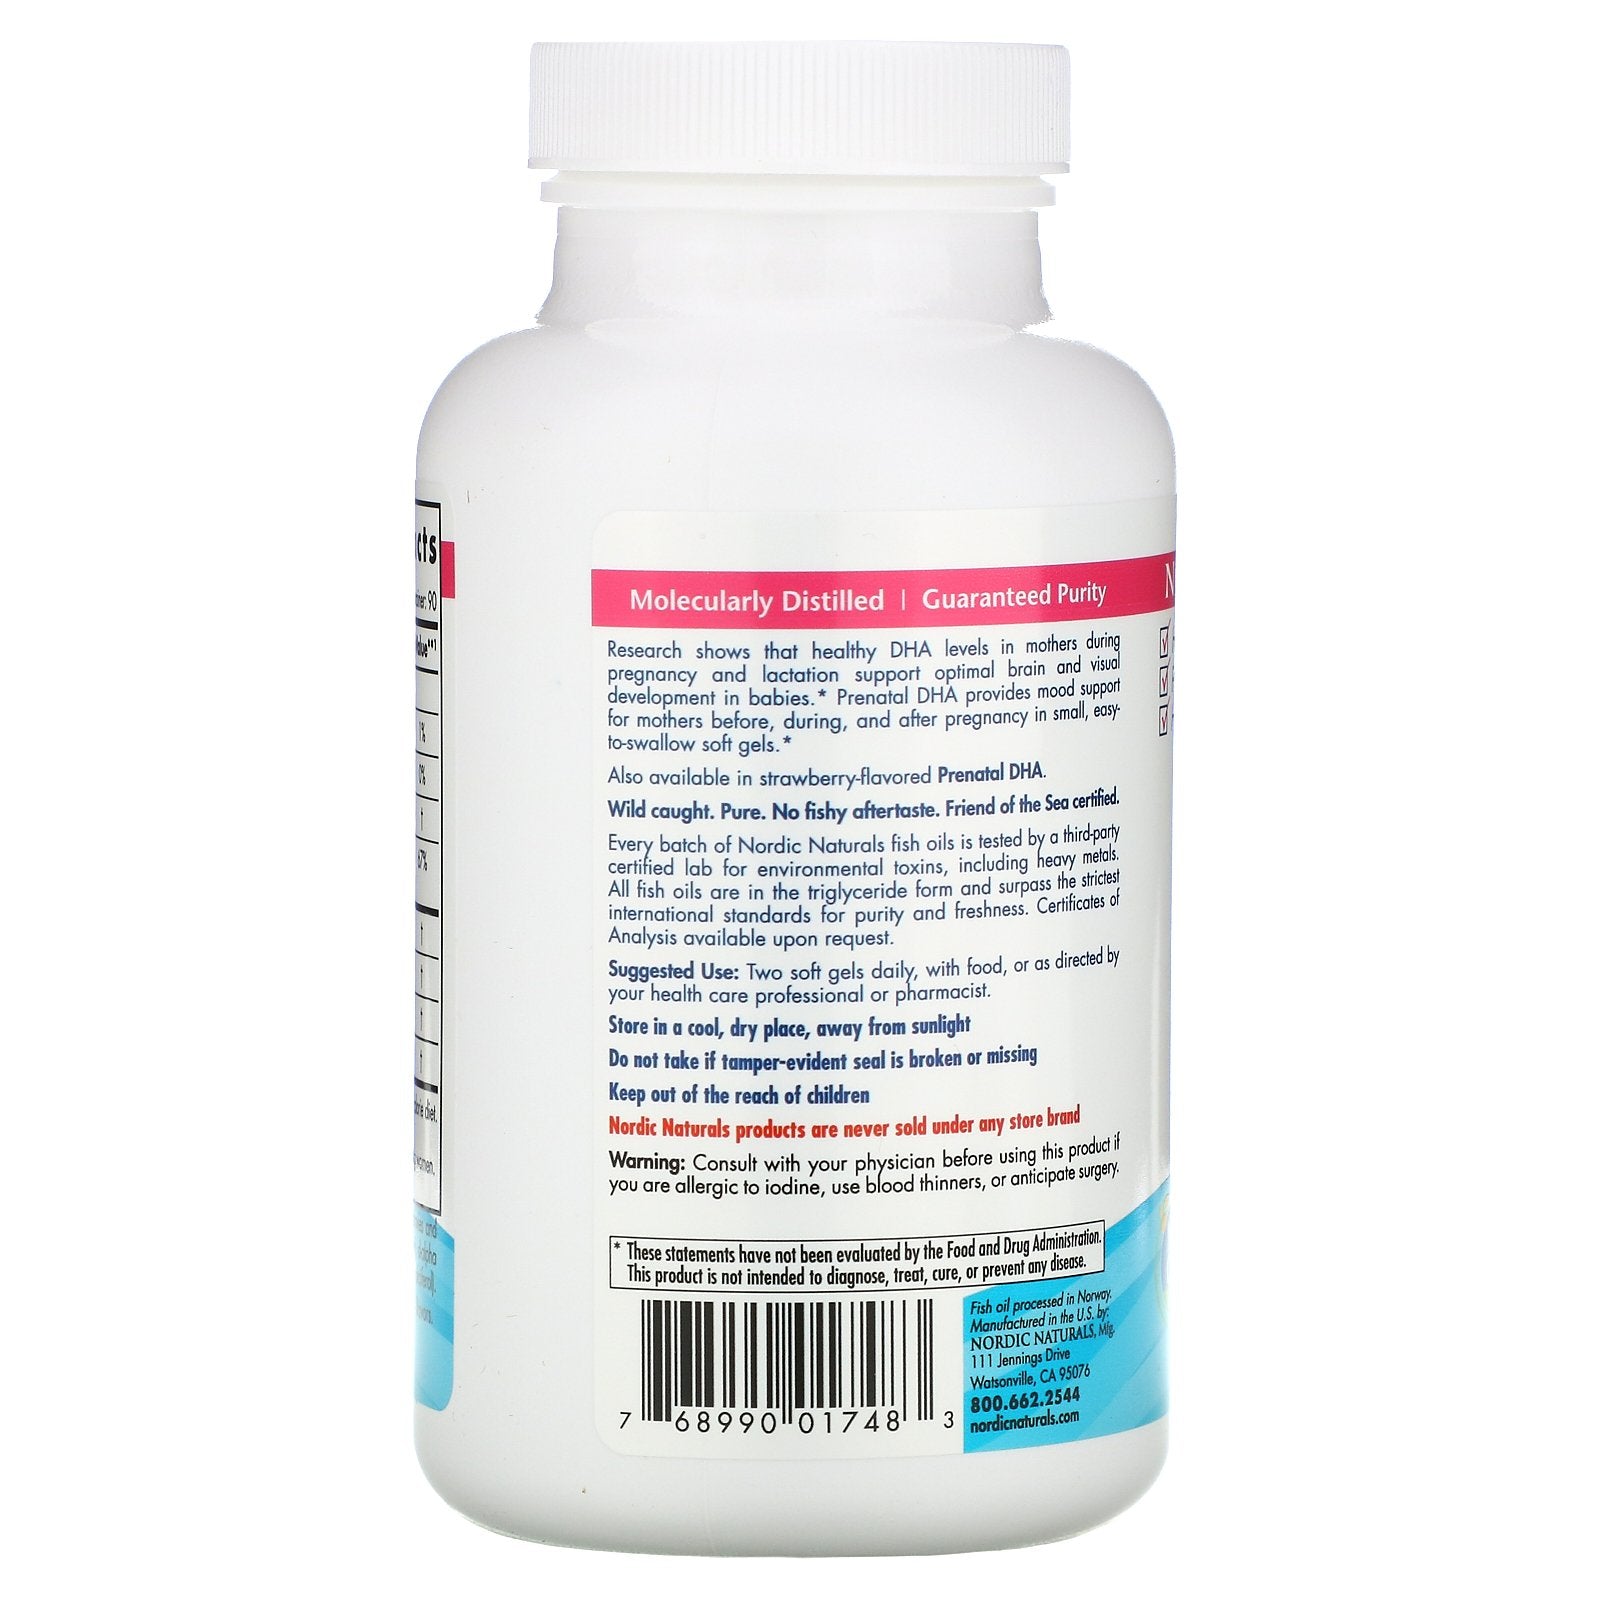 Nordic Naturals Prenatal DHA 500 mg - Plain, 180 sgls.